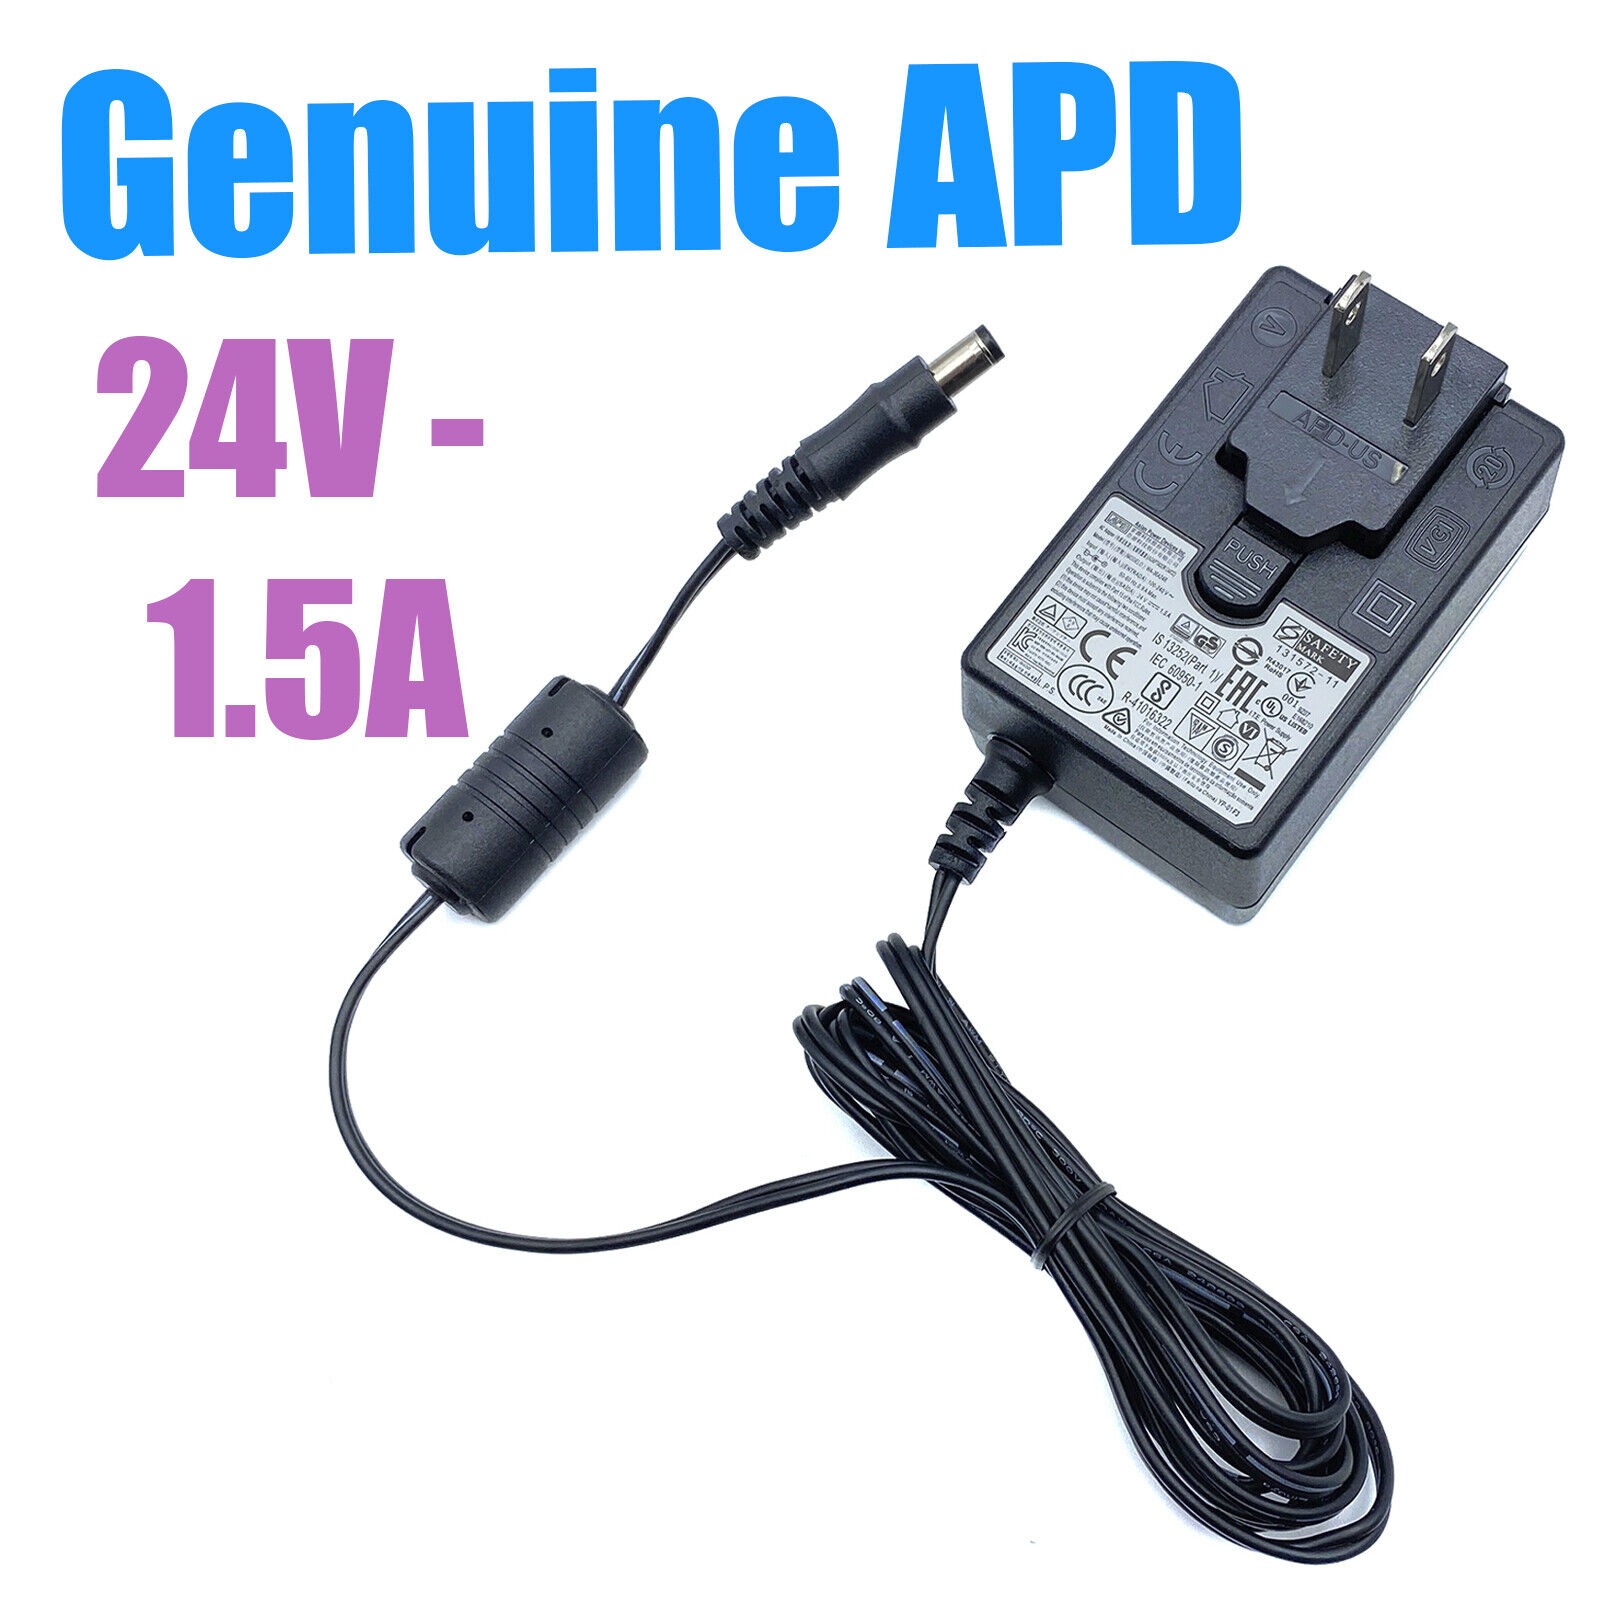 Genuine APD AC Power Adapter 24V for Kodak ScanMate i1150 Document Scanner OEM